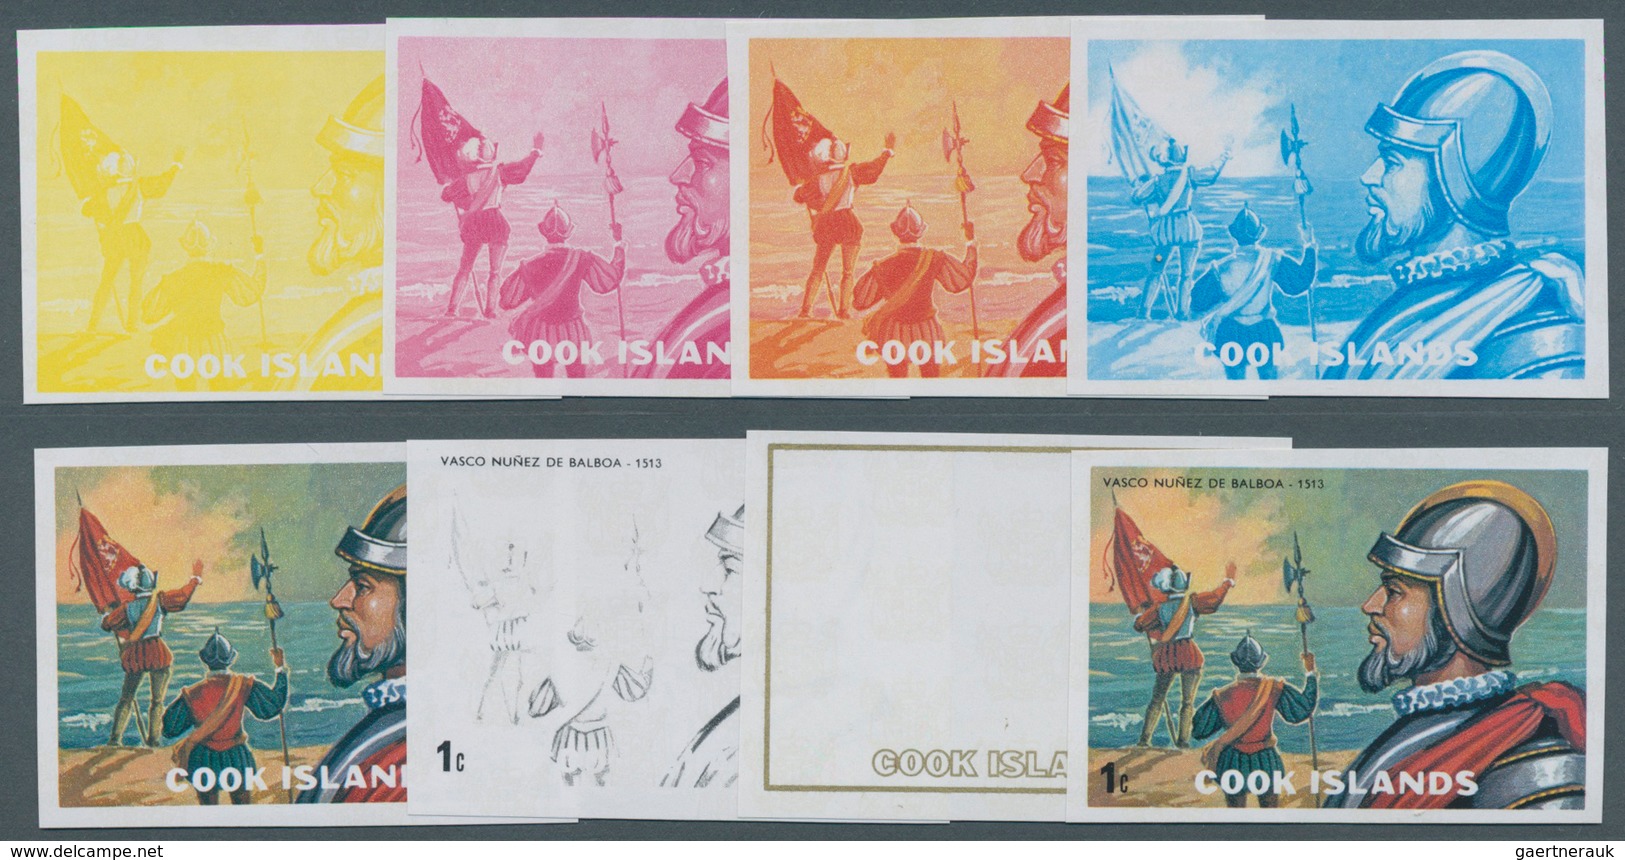 Cook-Inseln: 1966 - 1990, riesige Sammlung von PHASENDRUCKEN der Ausgaben der Cook Inseln aus Mi. 12